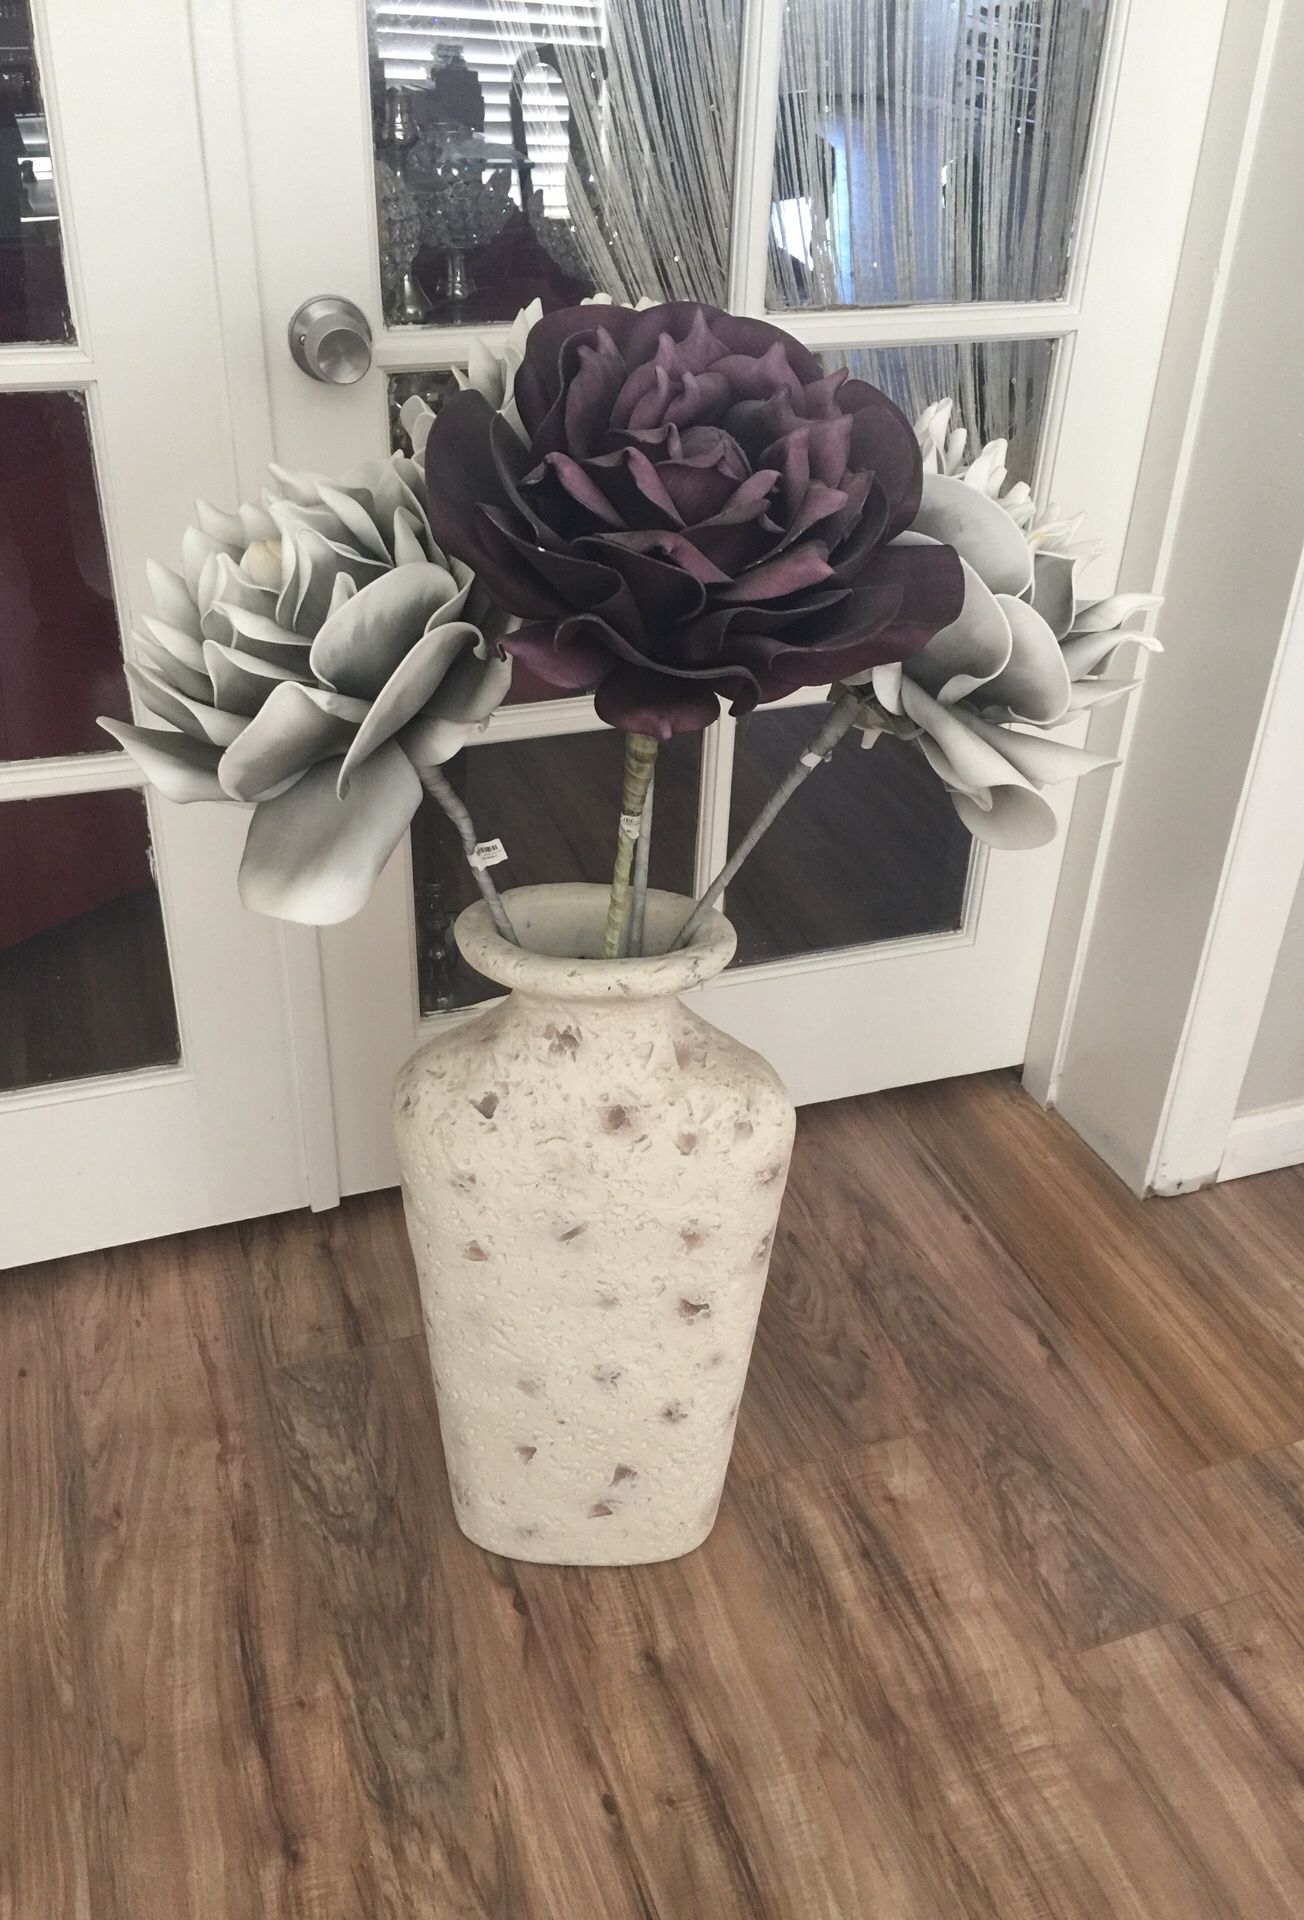 Vase w flowers